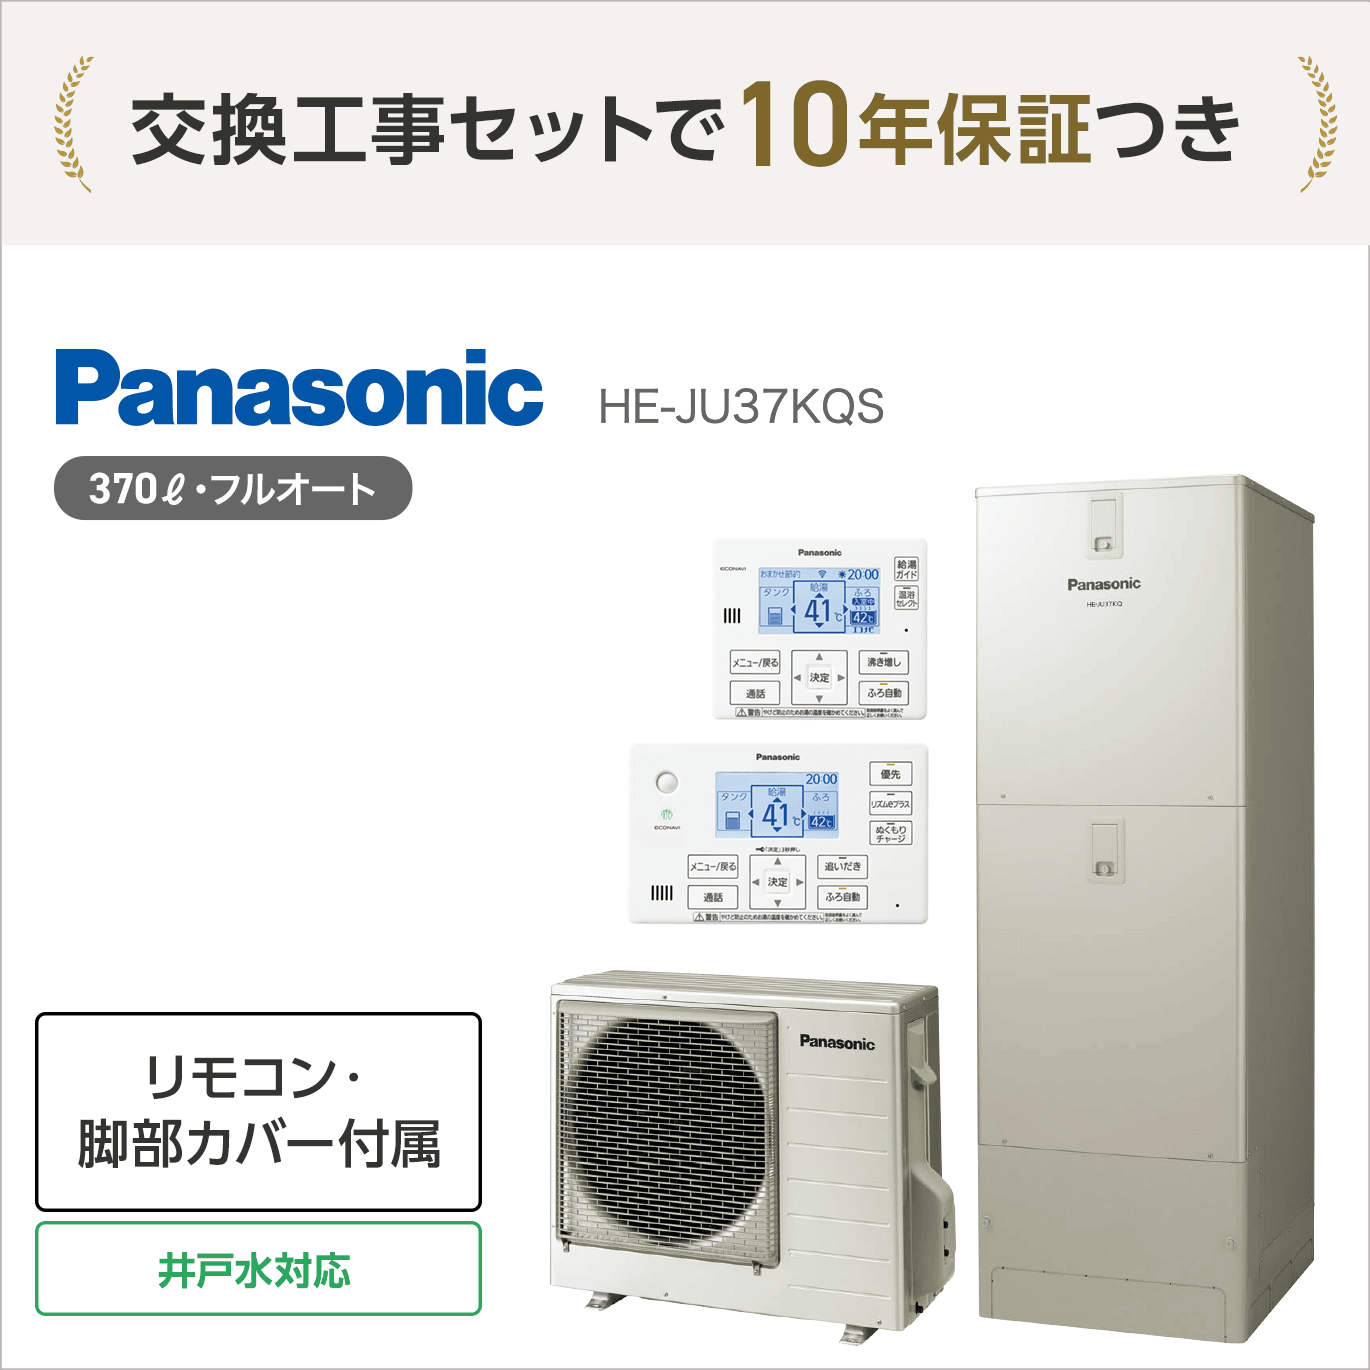 パナソニック HE-JU37KQS エコキュート フルオート【交換工事セット